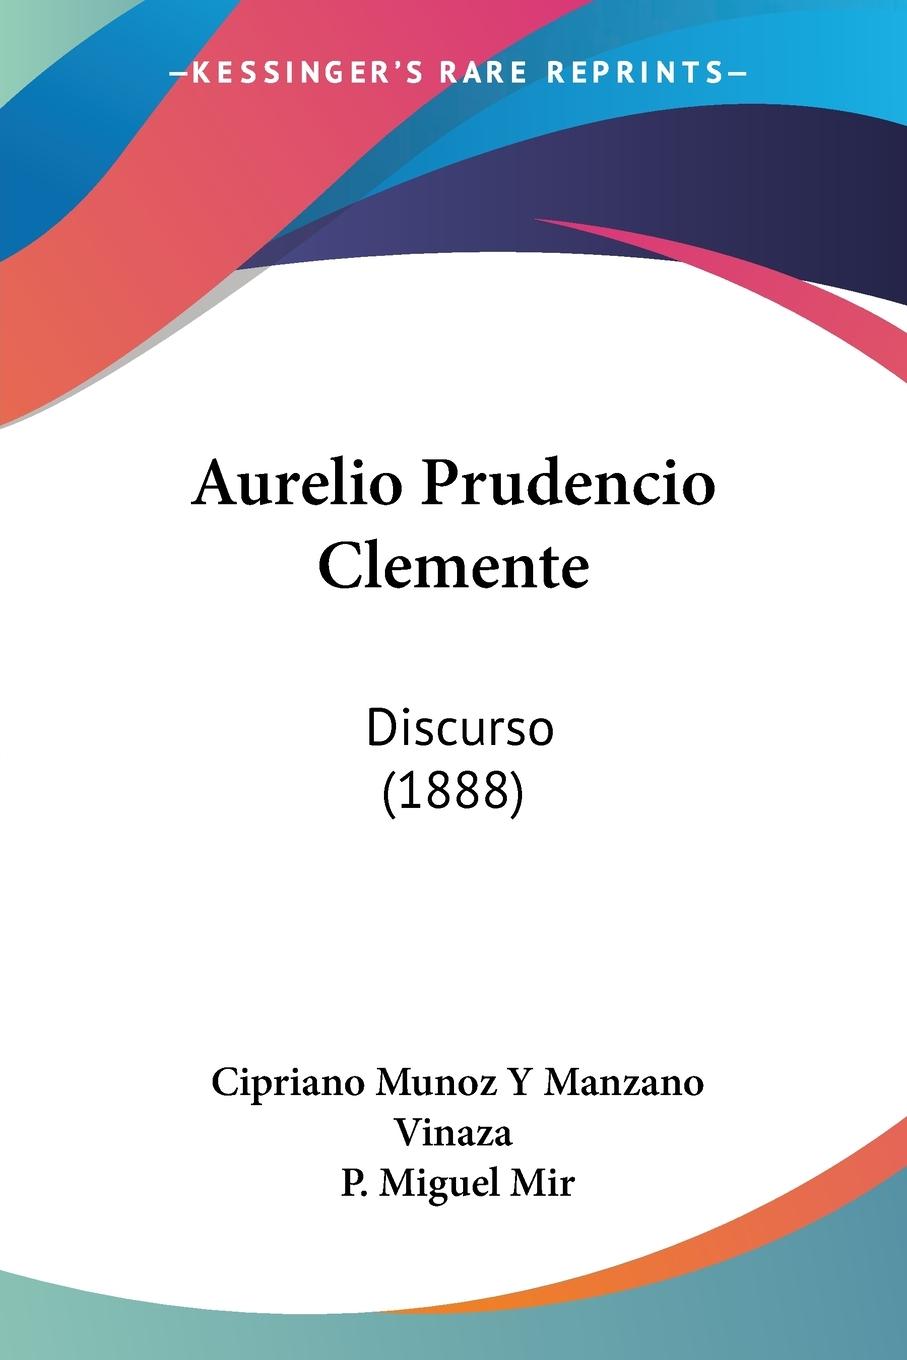 Aurelio Prudencio Clemente - Vinaza, Cipriano Munoz Y Manzano Mir, P. Miguel